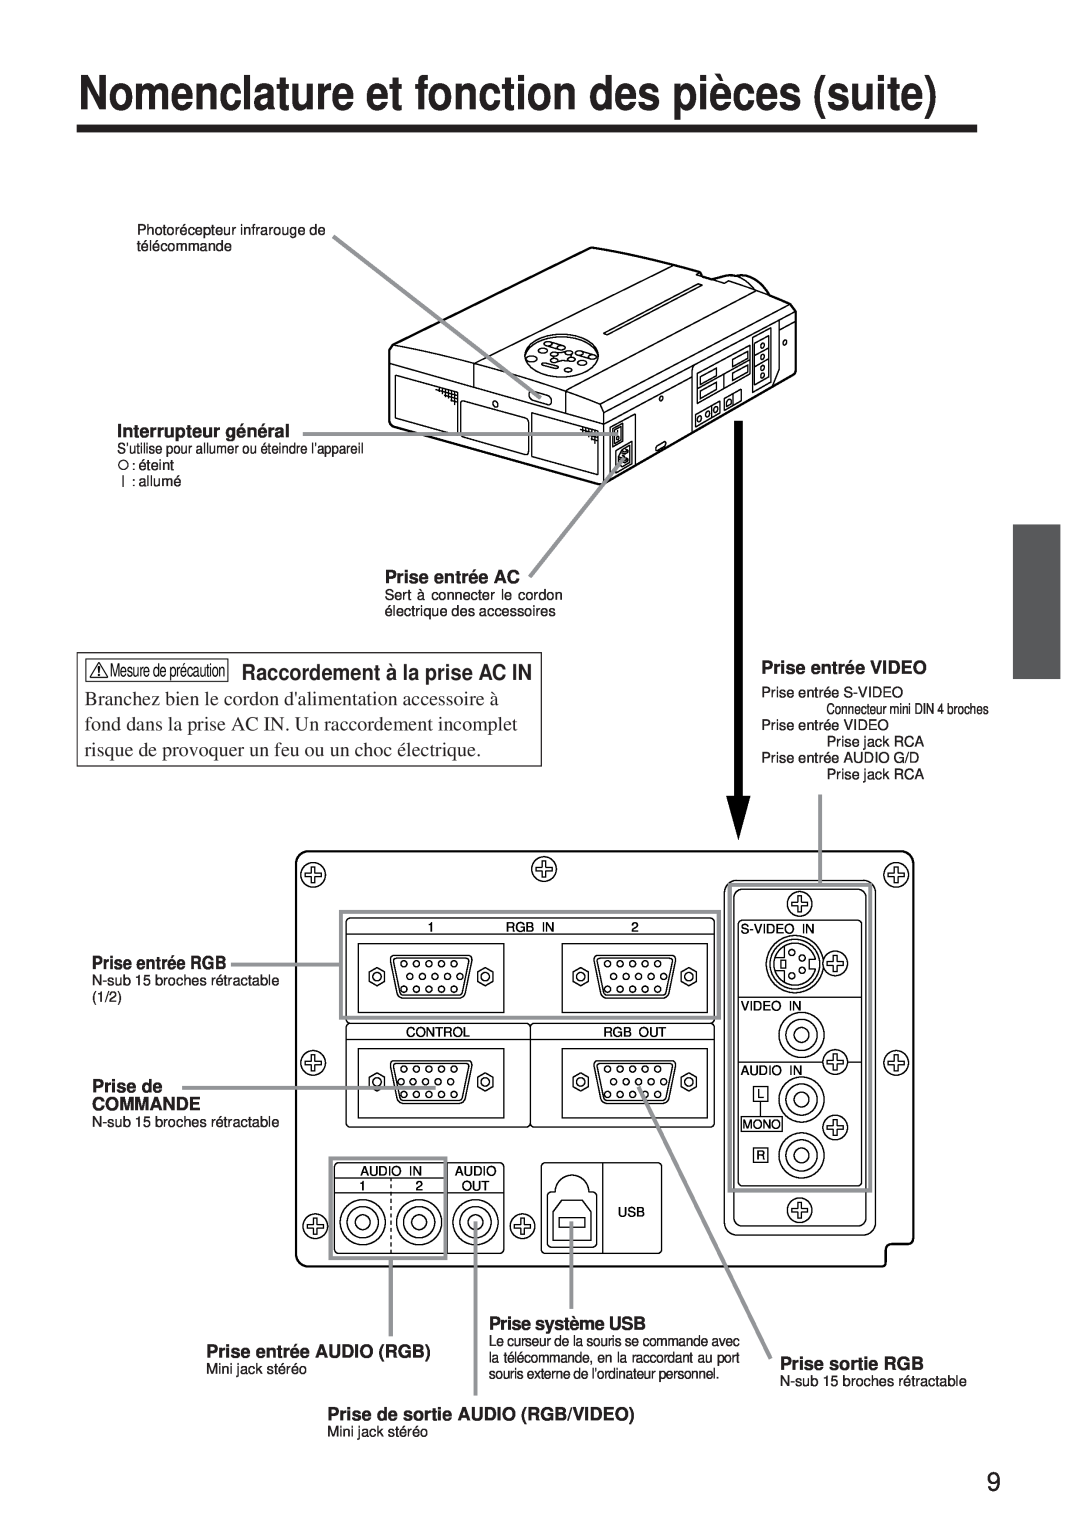 BOXLIGHT MP-650i user manual Nomenclature et fonction des pièces suite, Mesure de précaution Raccordement à la prise AC IN 